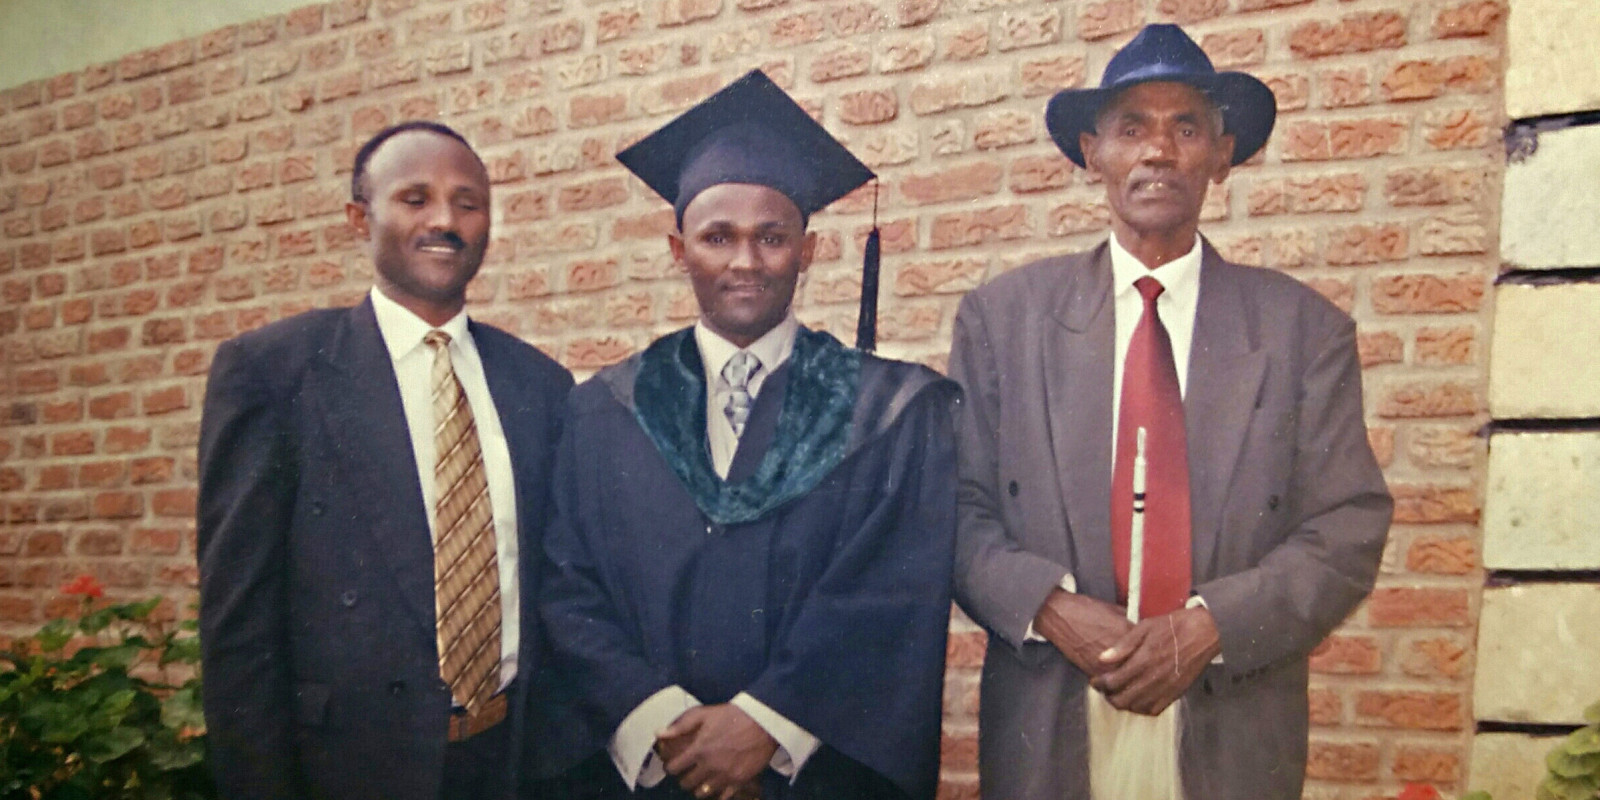 3 men at a graduation